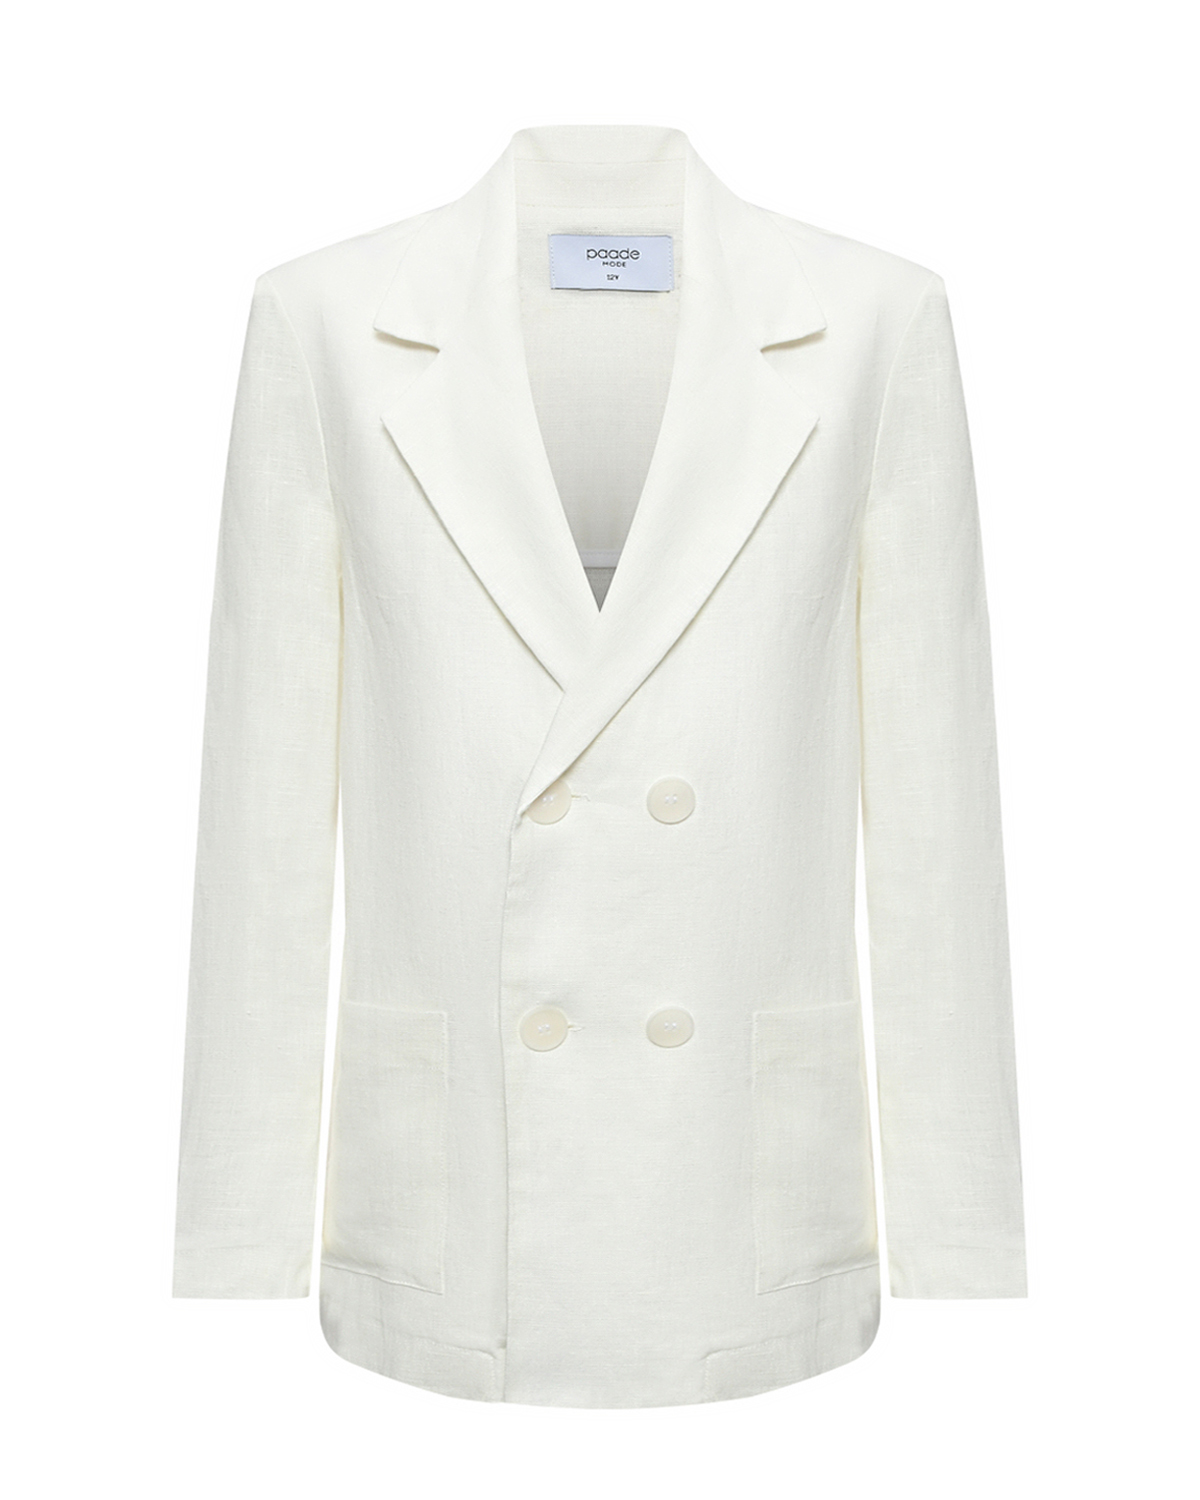 Пиджак с фигурными лацканами, белый Paade Mode пиджак оверсайз белый glvr xl